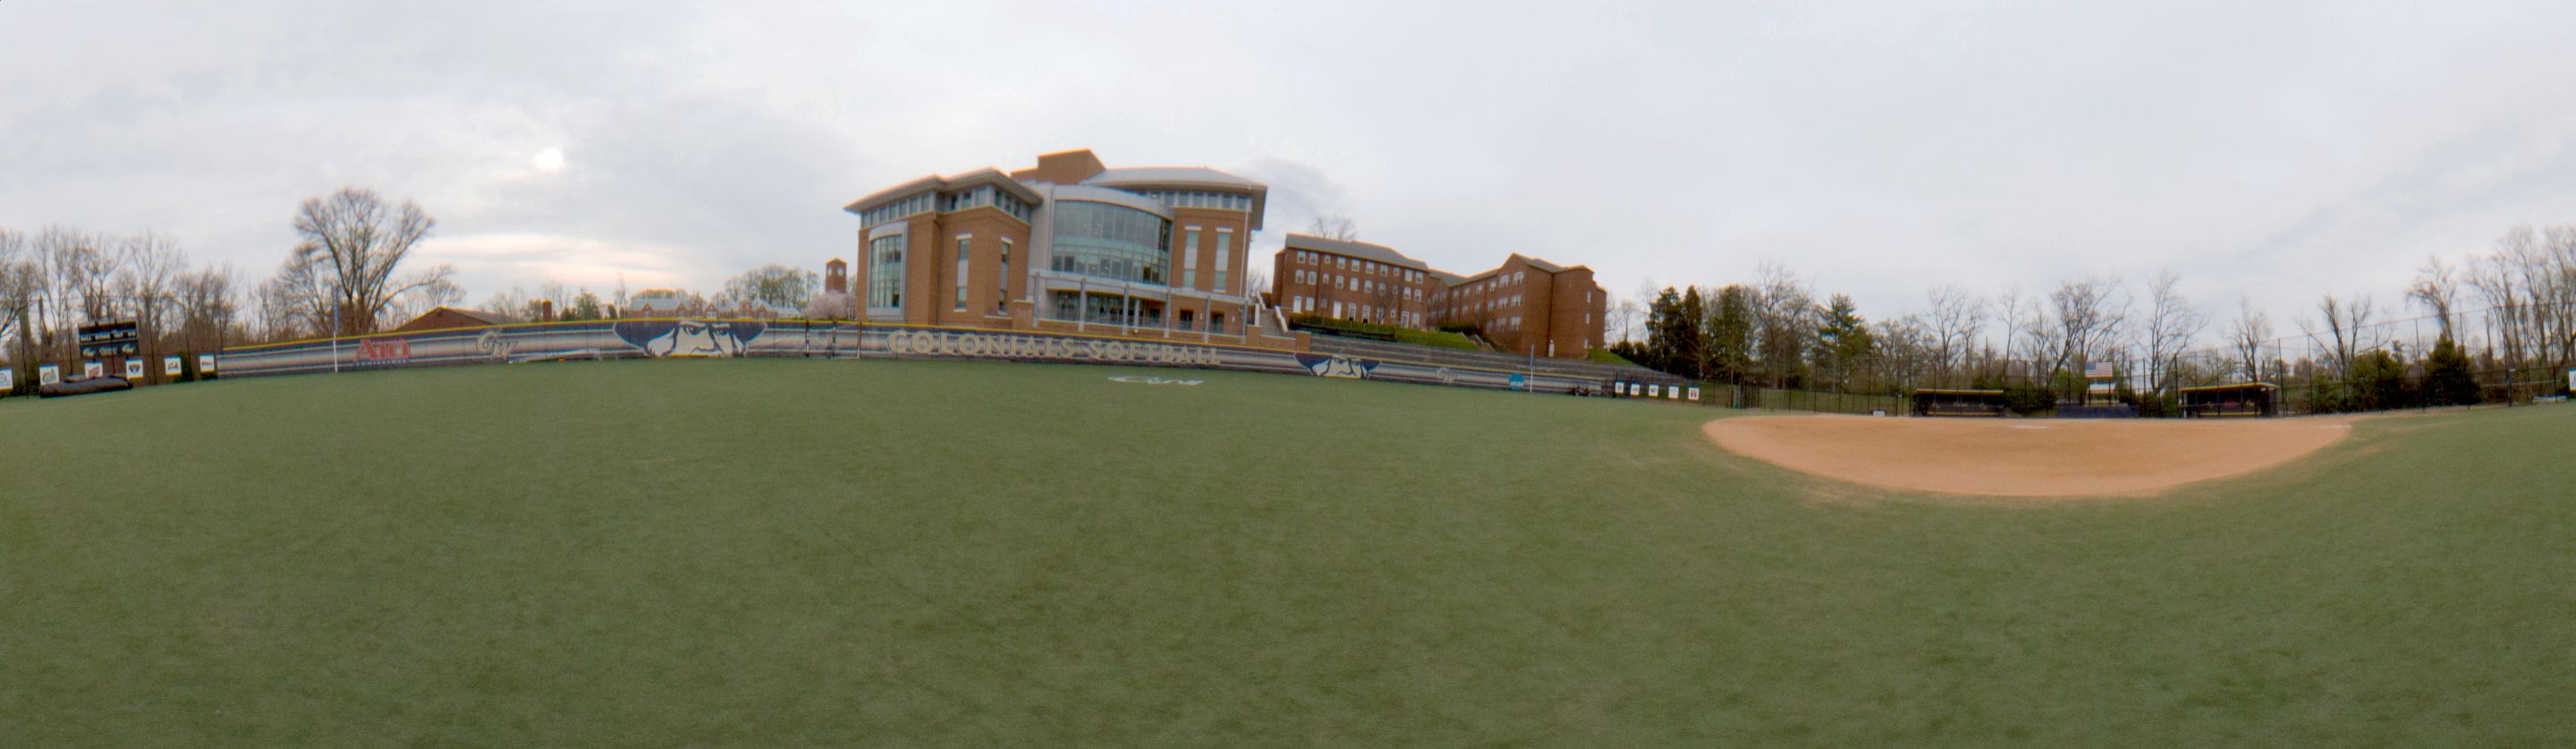 Panoramic view of softball field.